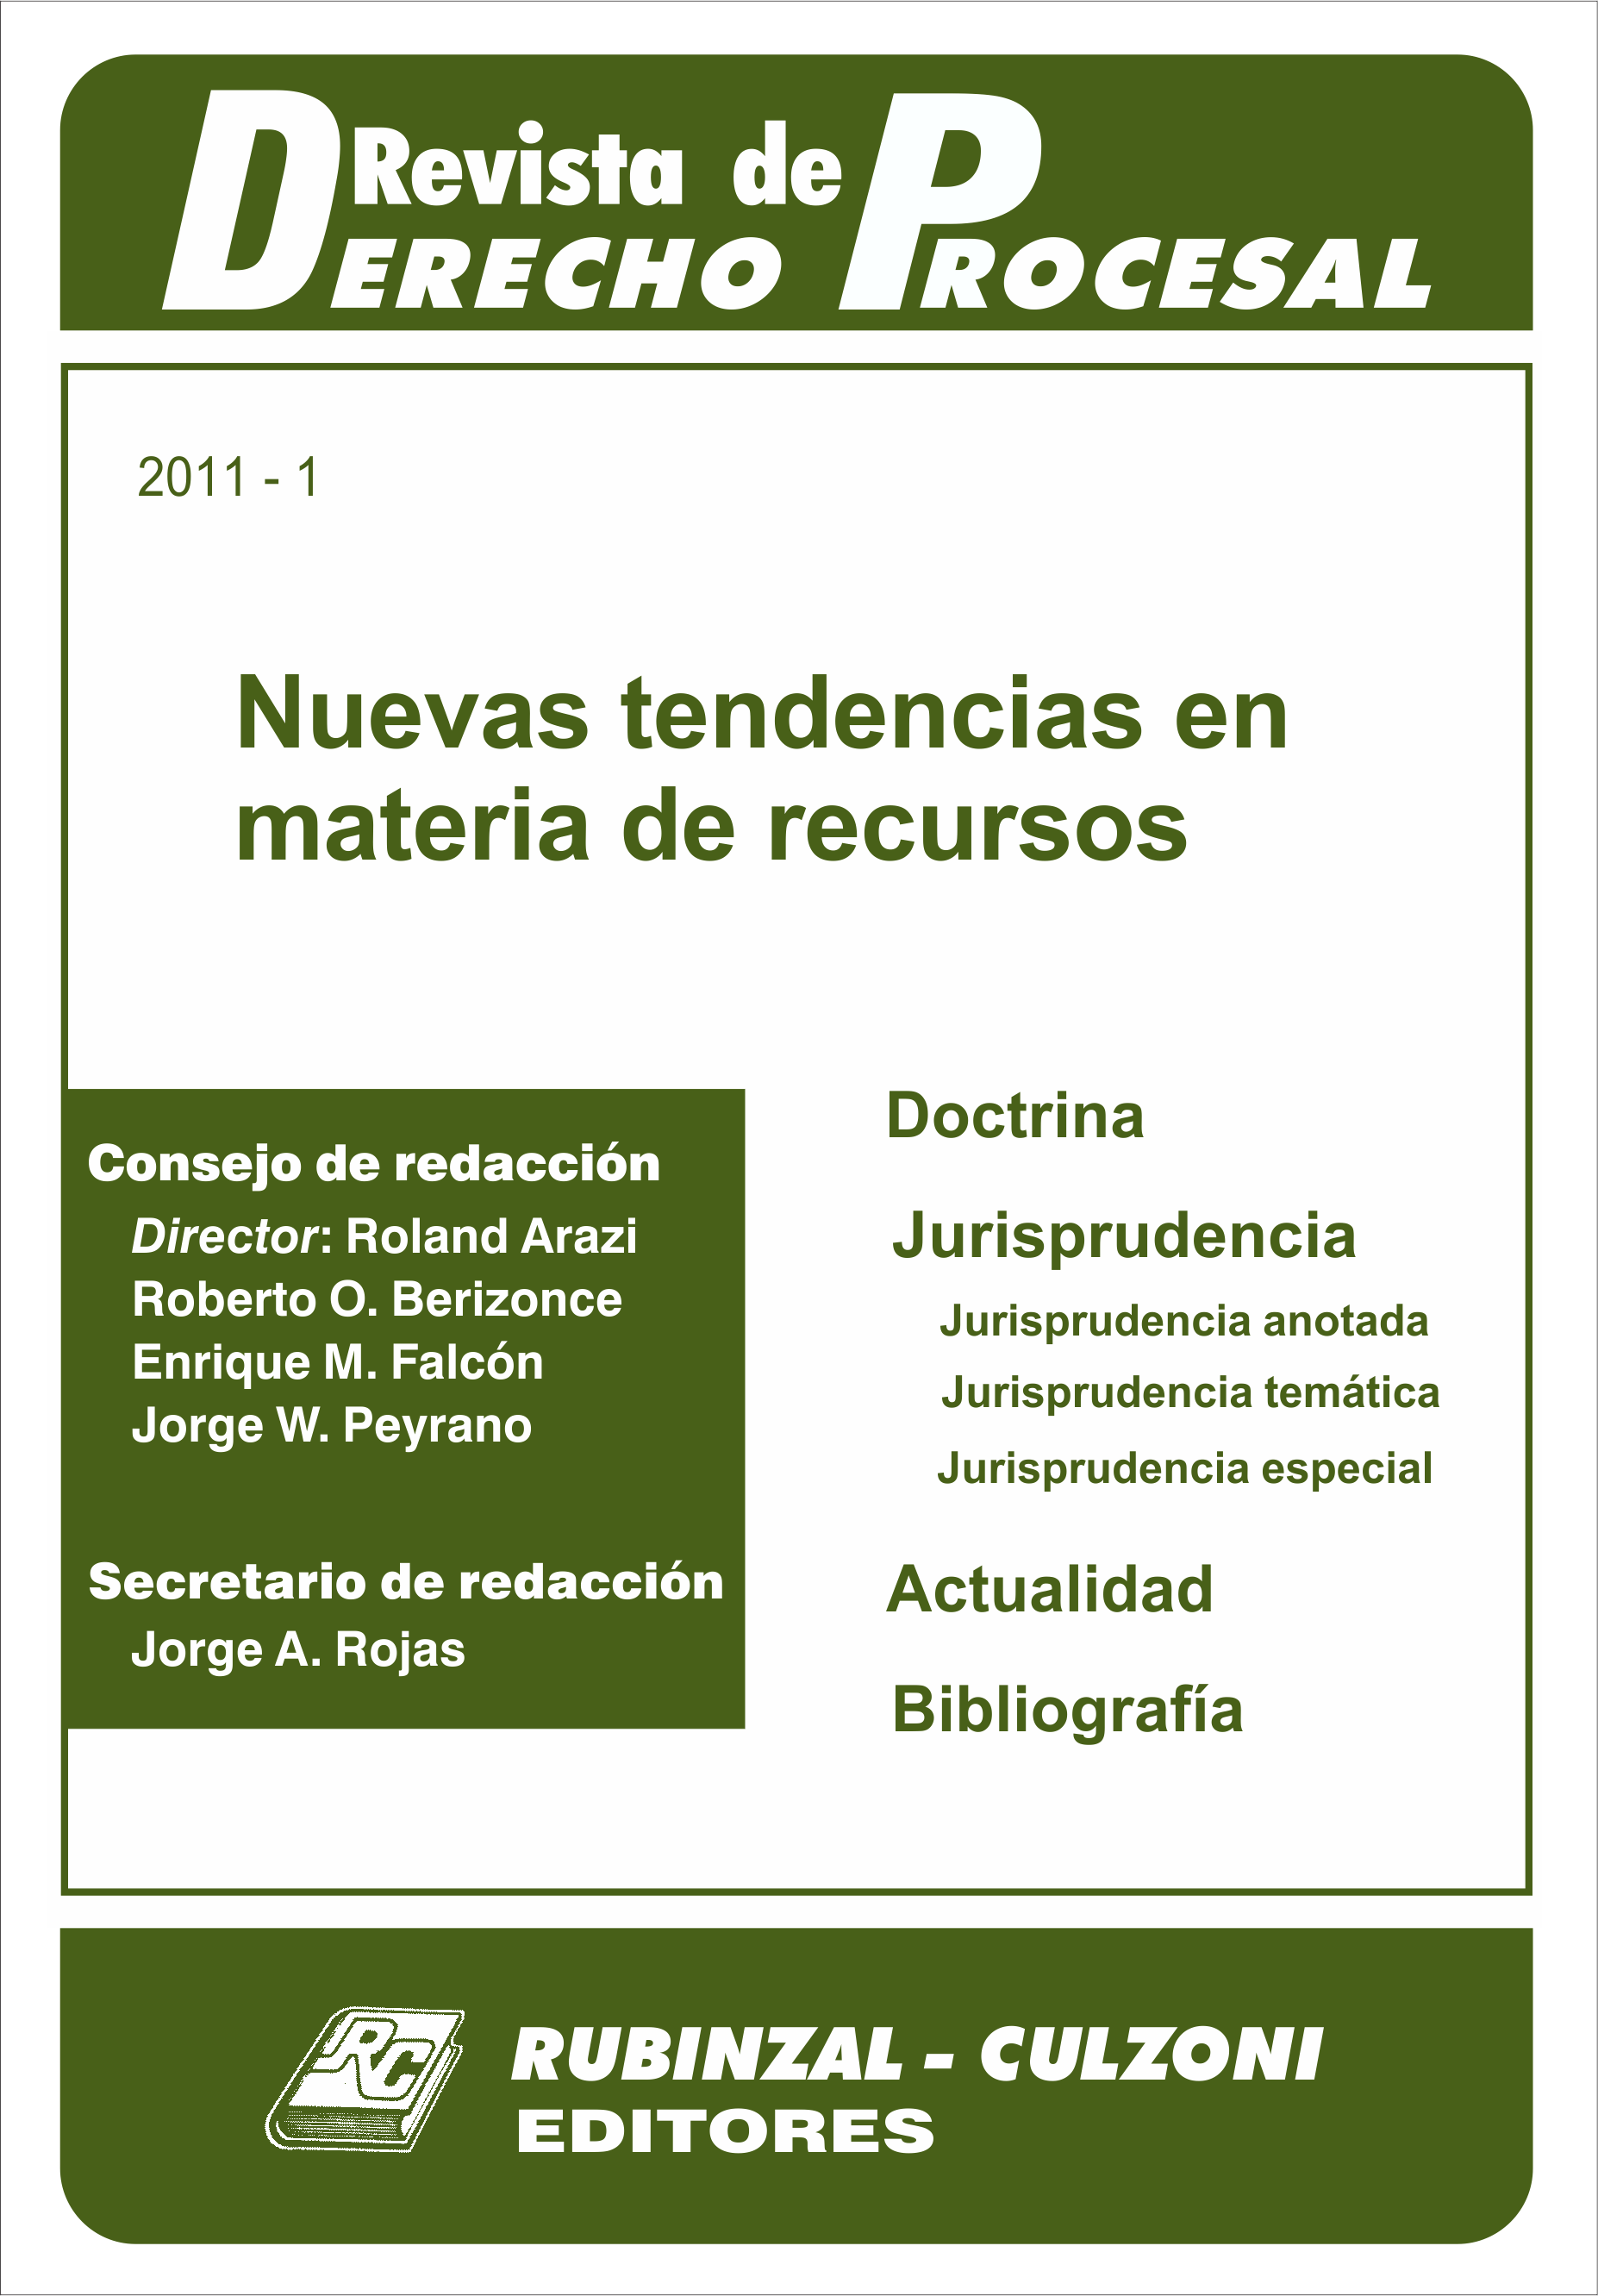 Revista de Derecho Procesal - Nuevas tendencias en materia de recursos.